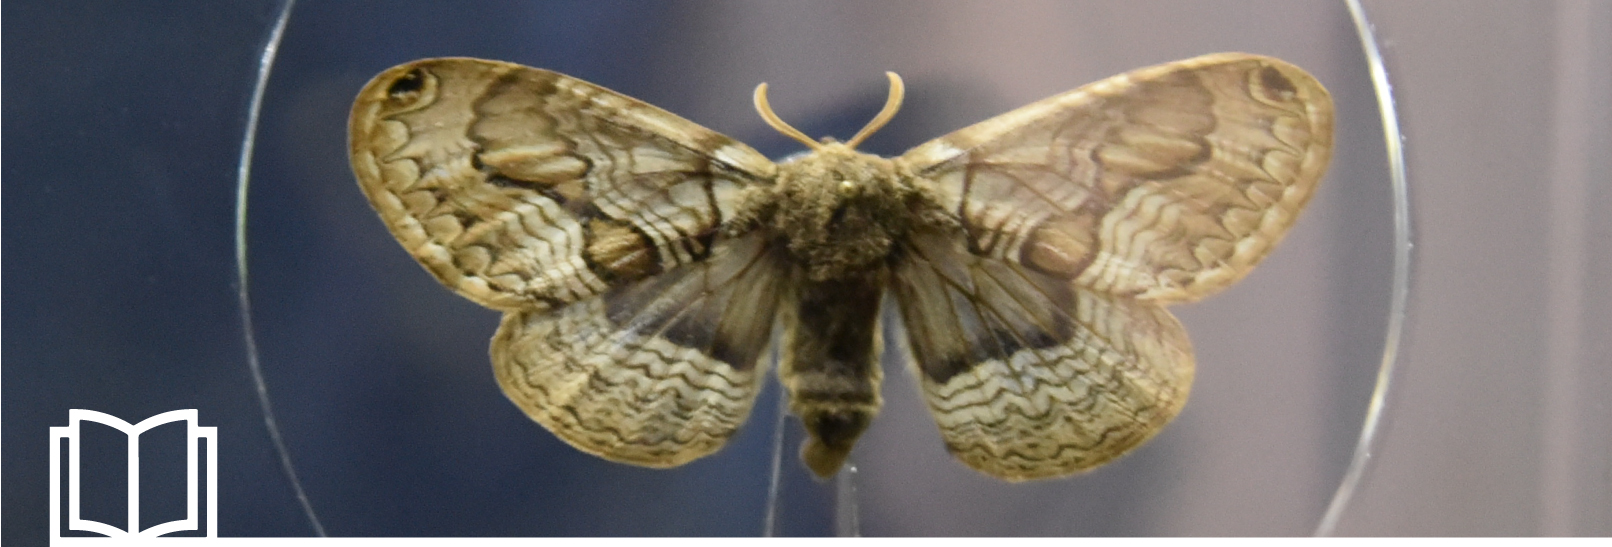 La Bramea, una farfalla fossile vivente